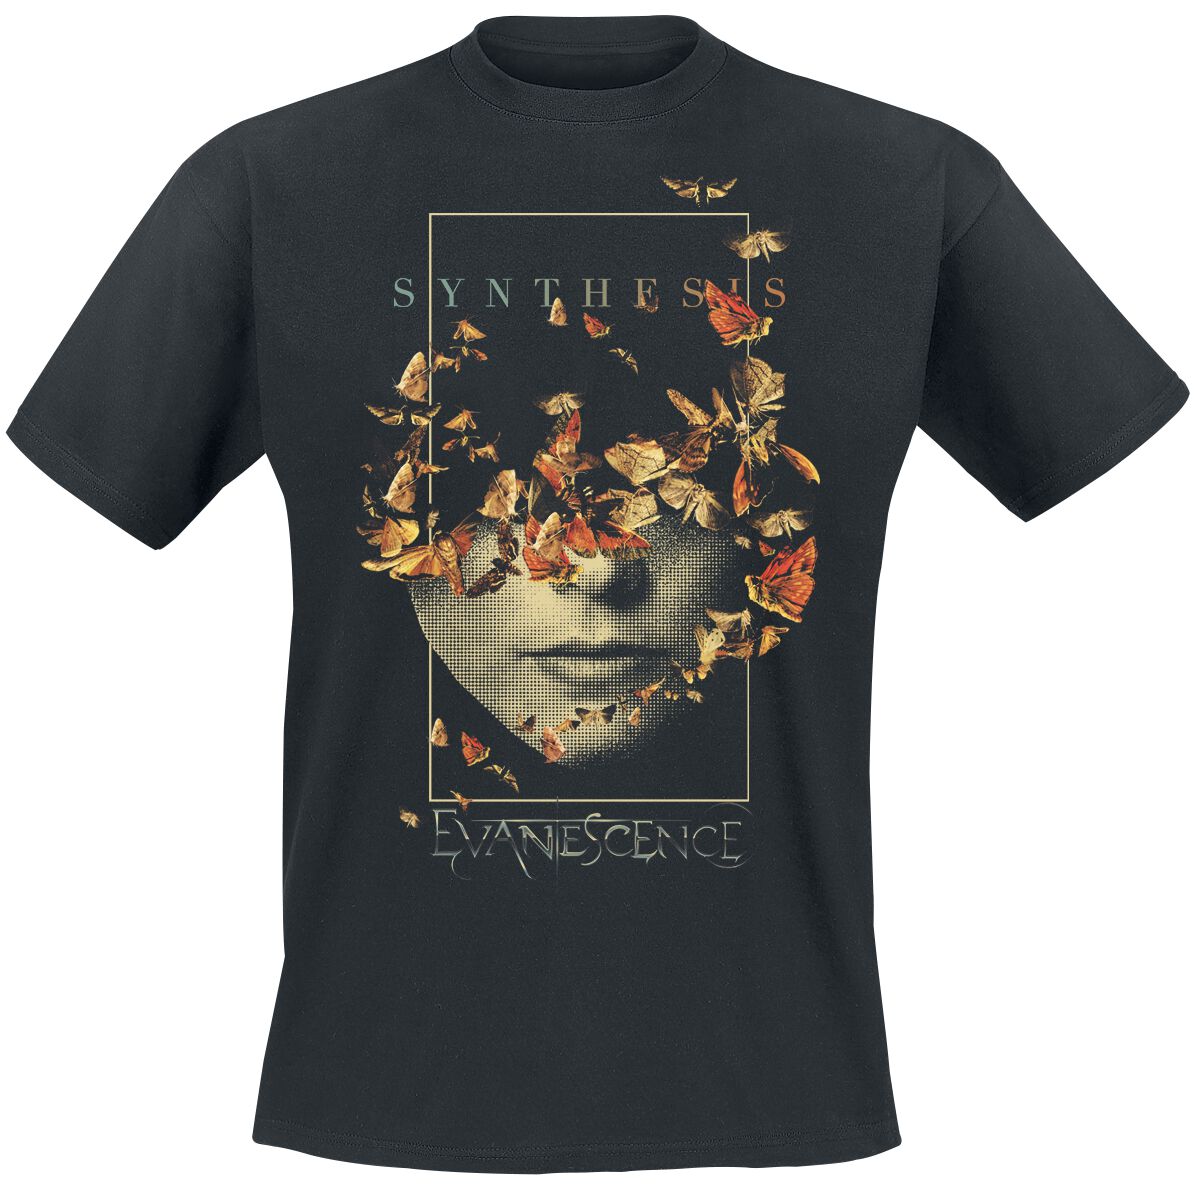 Evanescence T-Shirt - Half Face - S bis 4XL - für Männer - Größe 4XL - schwarz  - Lizenziertes Merchandise!